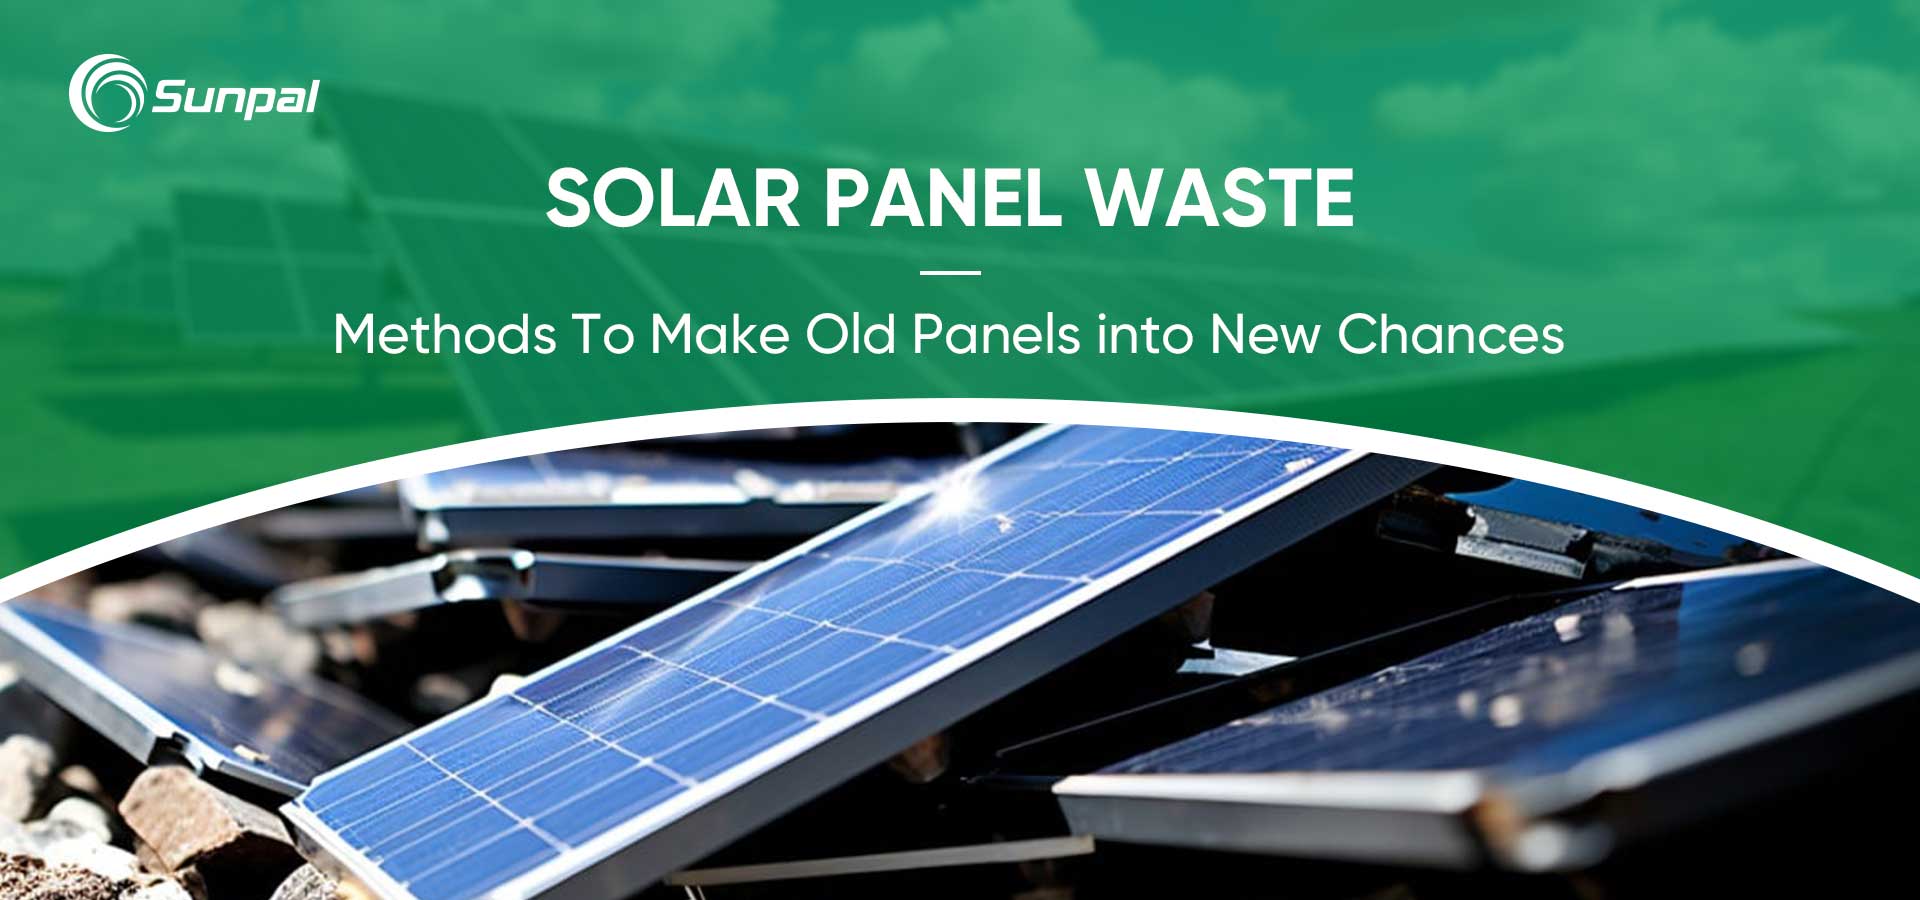 Reciclaje de residuos de paneles solares: transformación de paneles viejos en nuevas oportunidades